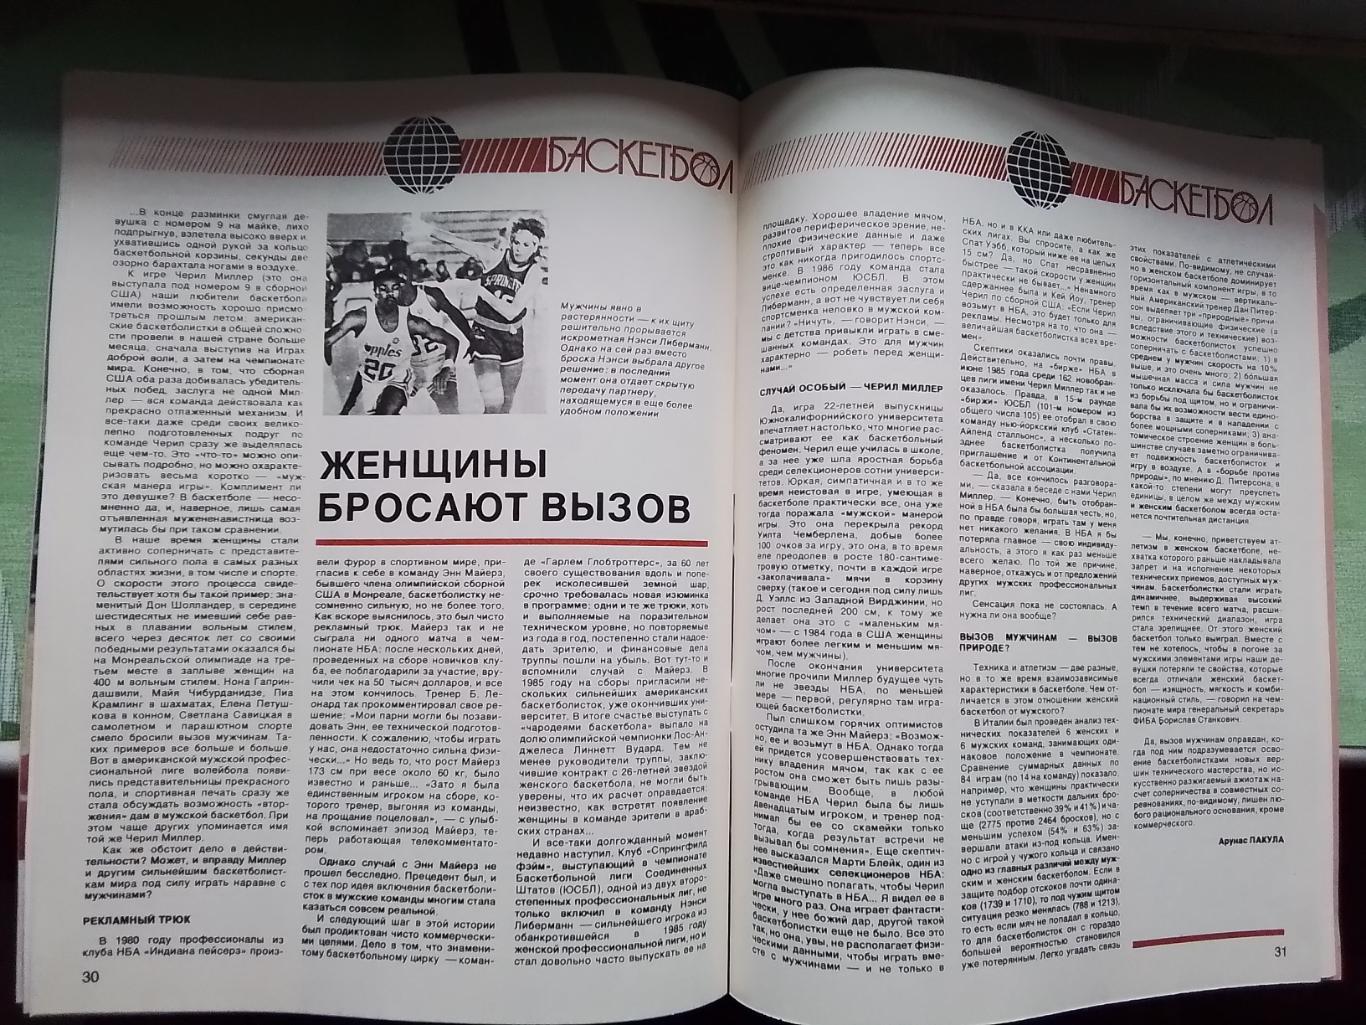 Журнал Спортивные игры 1987 3 Каунас обладатель межконт Кубка М Якушин ДМ - НБА 7